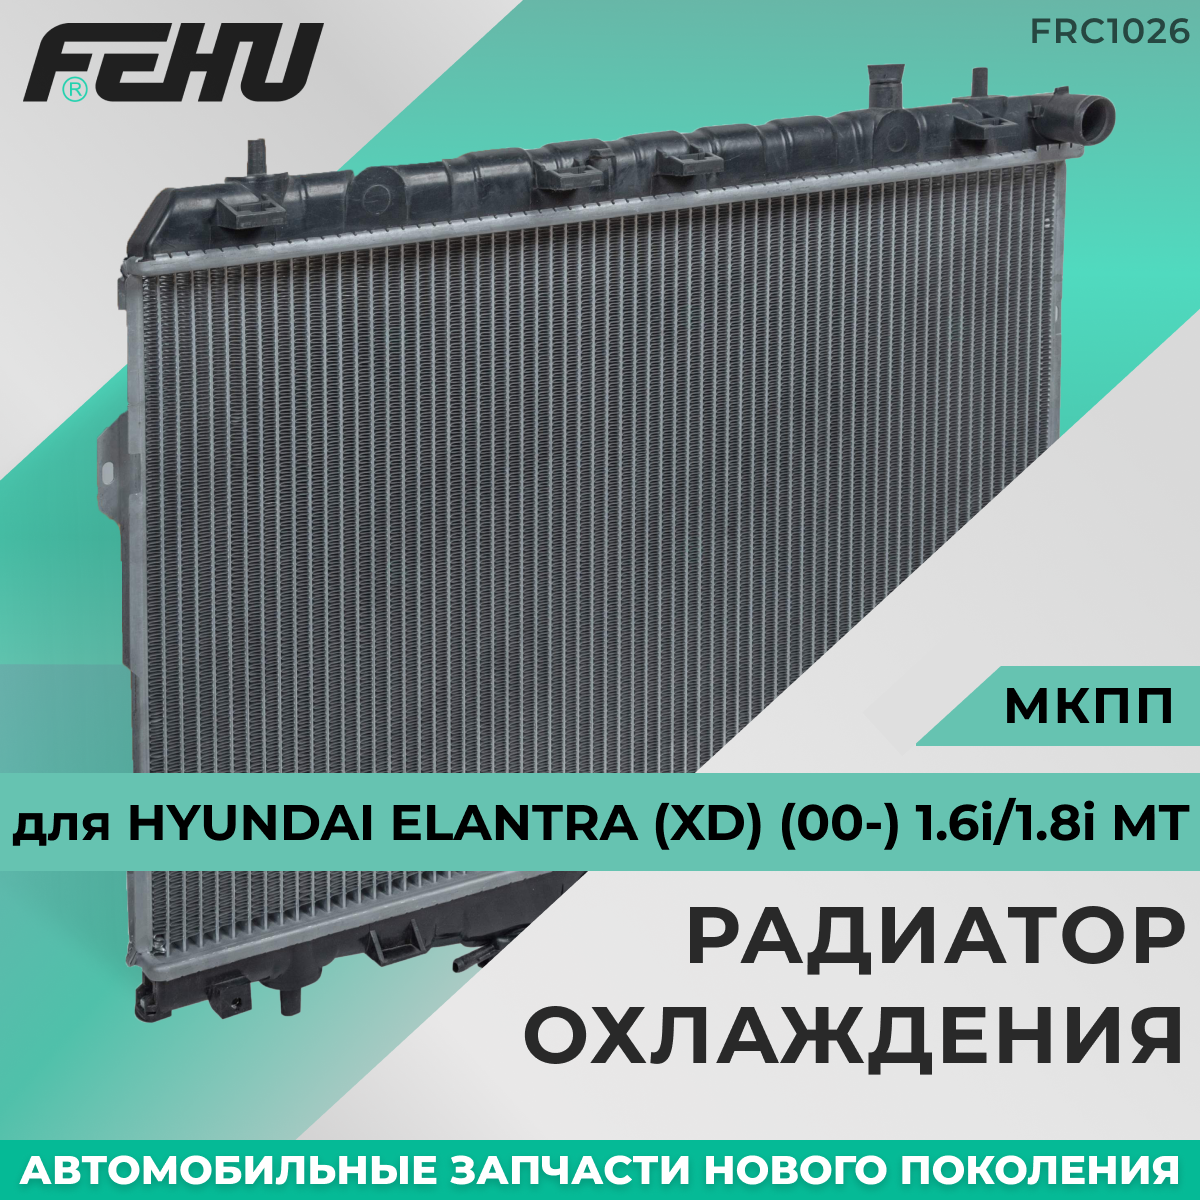 Радиатор охлаждения FEHU (феху) Hyundai Elantra (XD) (00-) 1.6i/1.8i AT арт. 253102D110; 253102D210; 253102D010; 253102D015; 253102D016; 253102D216; S253102D210